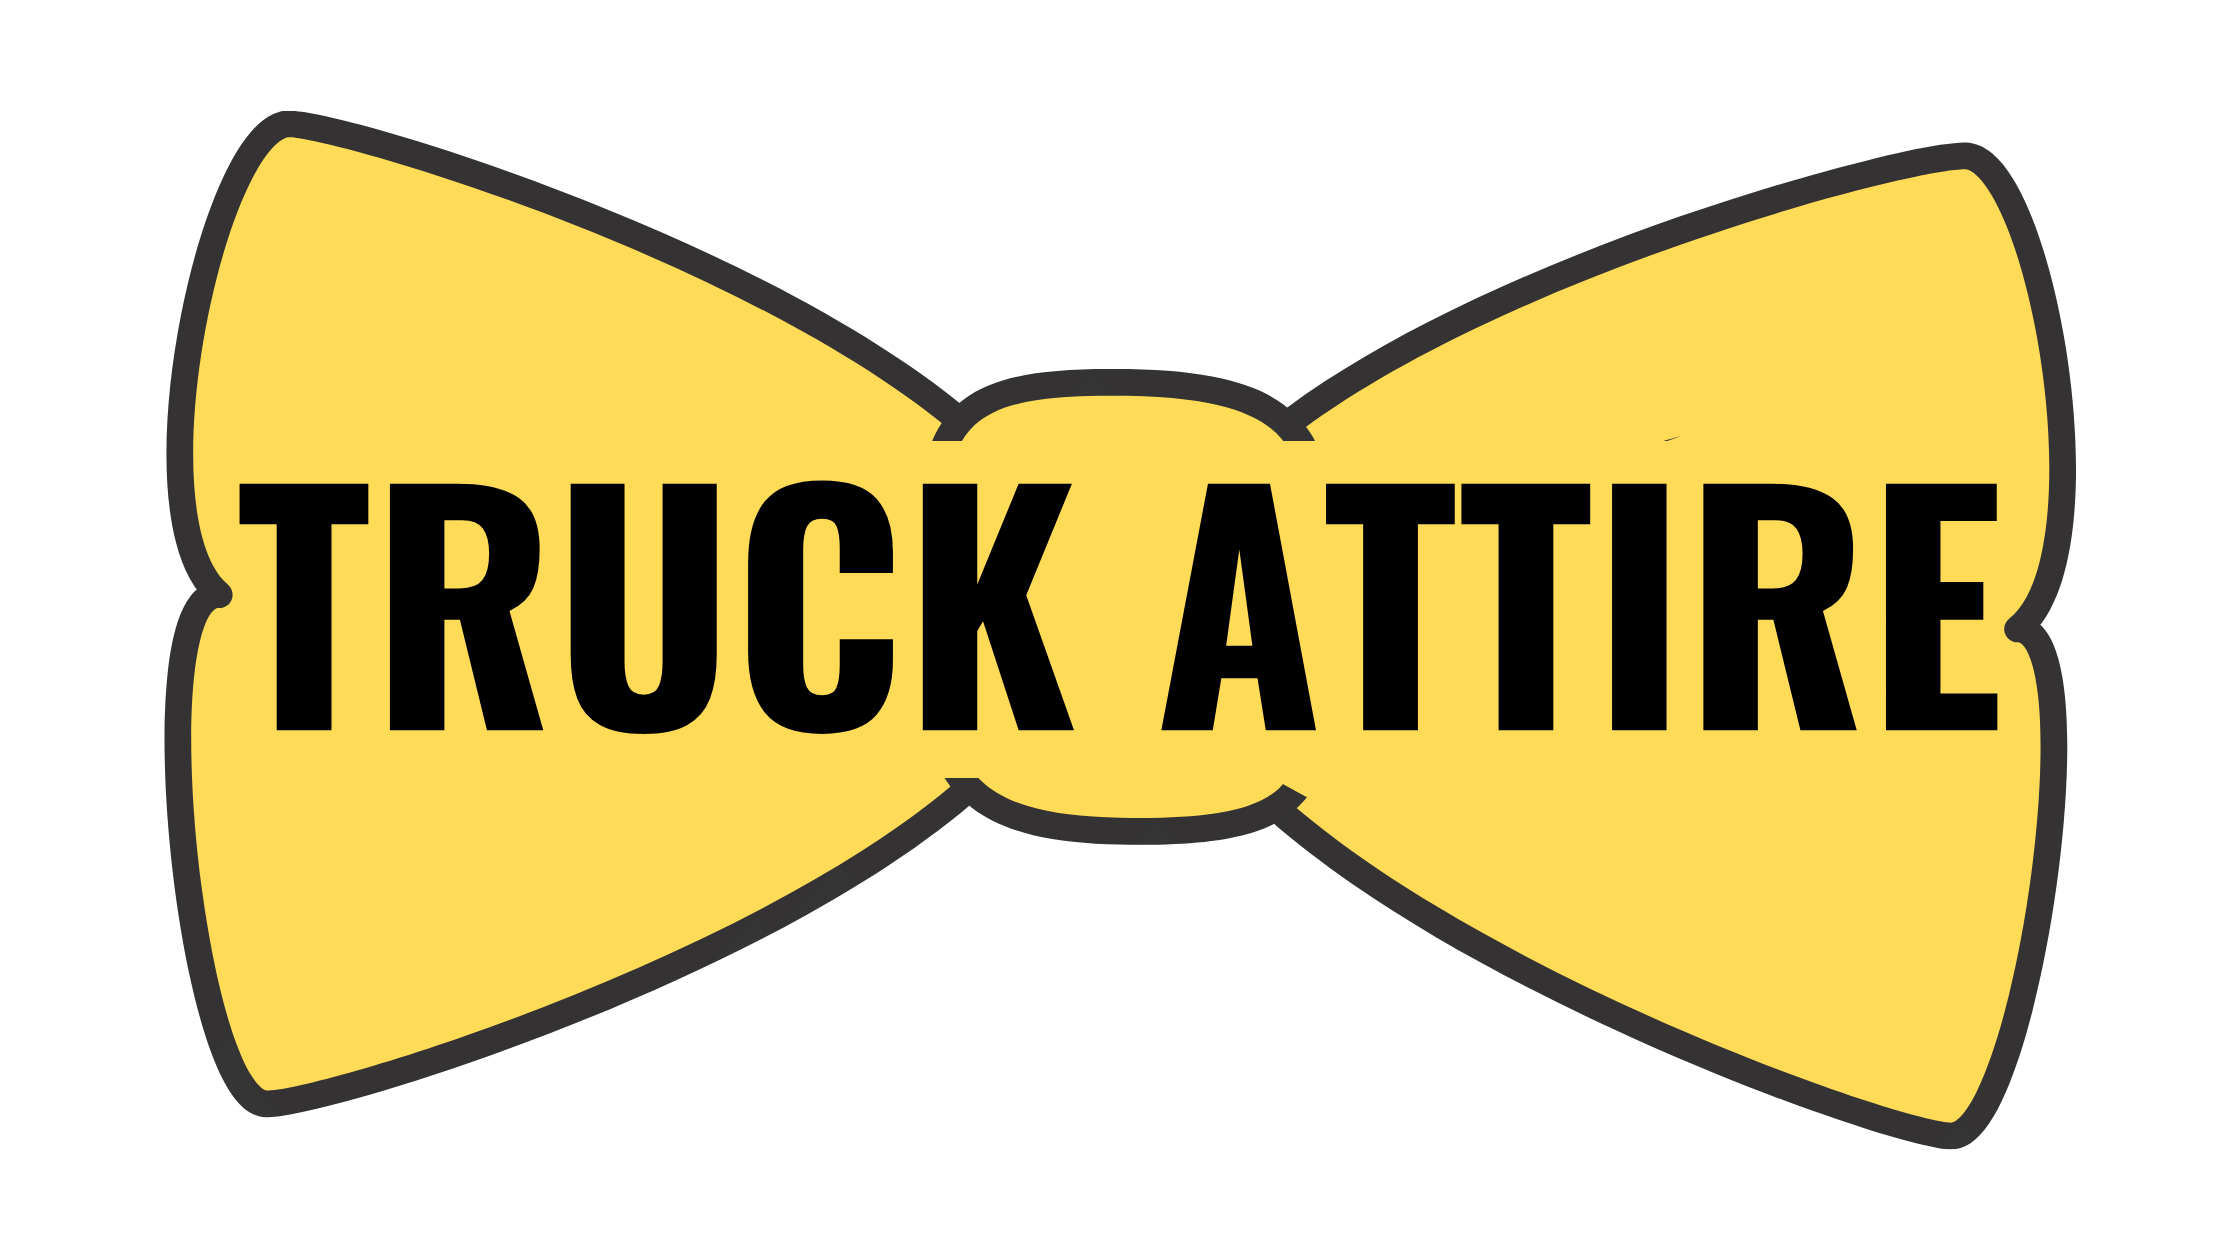 Truck Attire